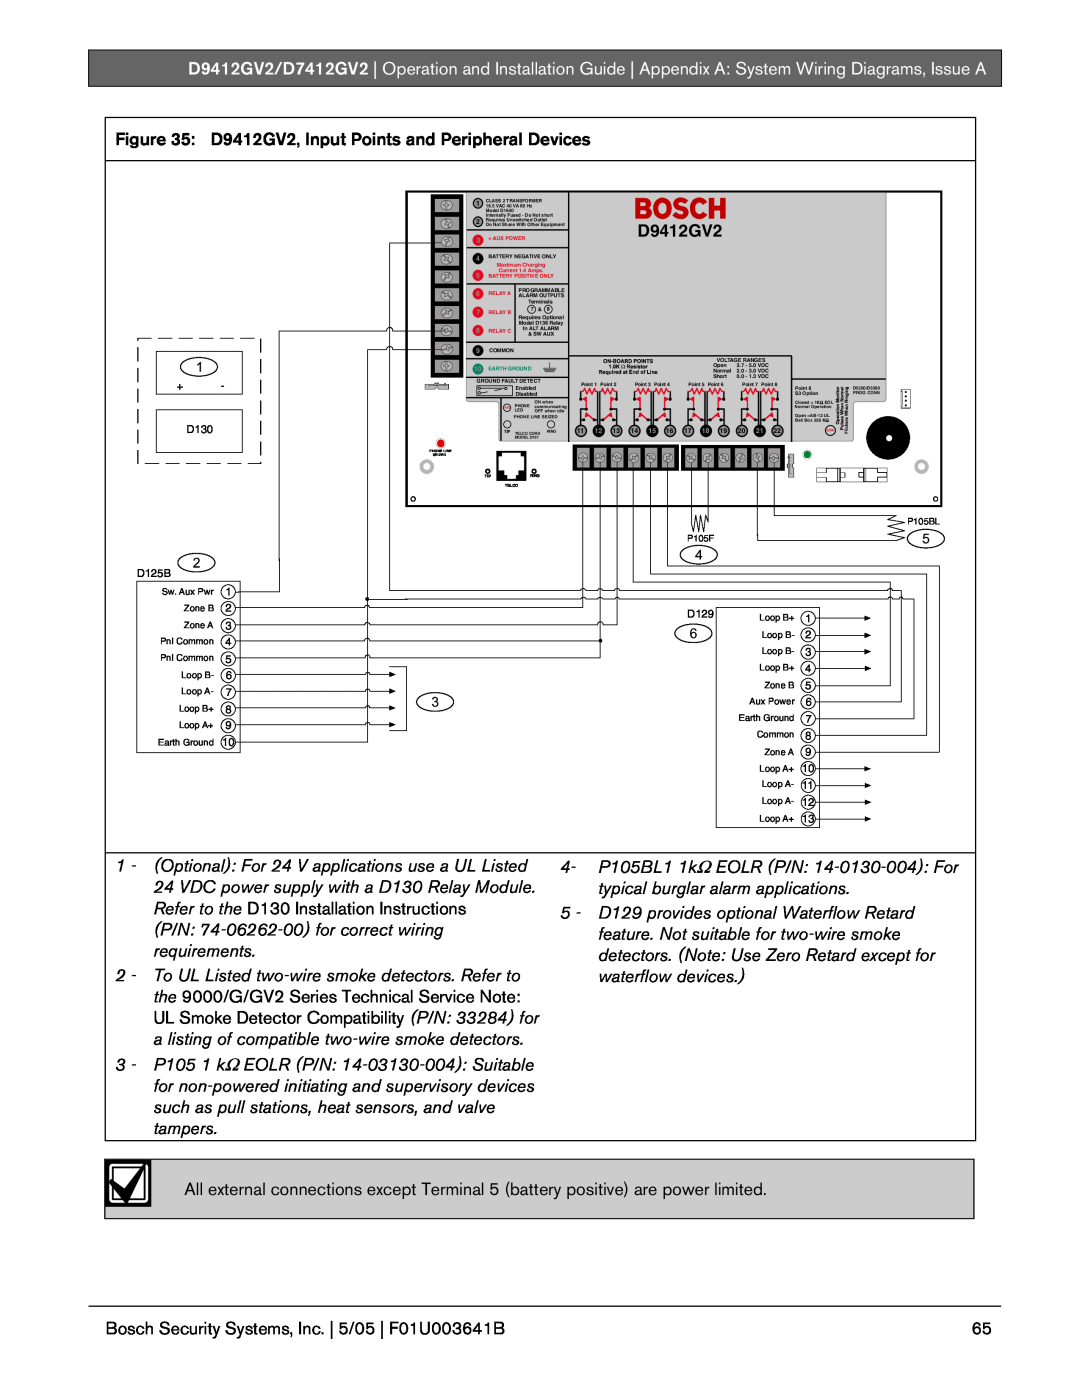 Bosch Appliances D9412GV2 manual Bosch Security Systems, Inc. | 5/05 | F01U003641B 